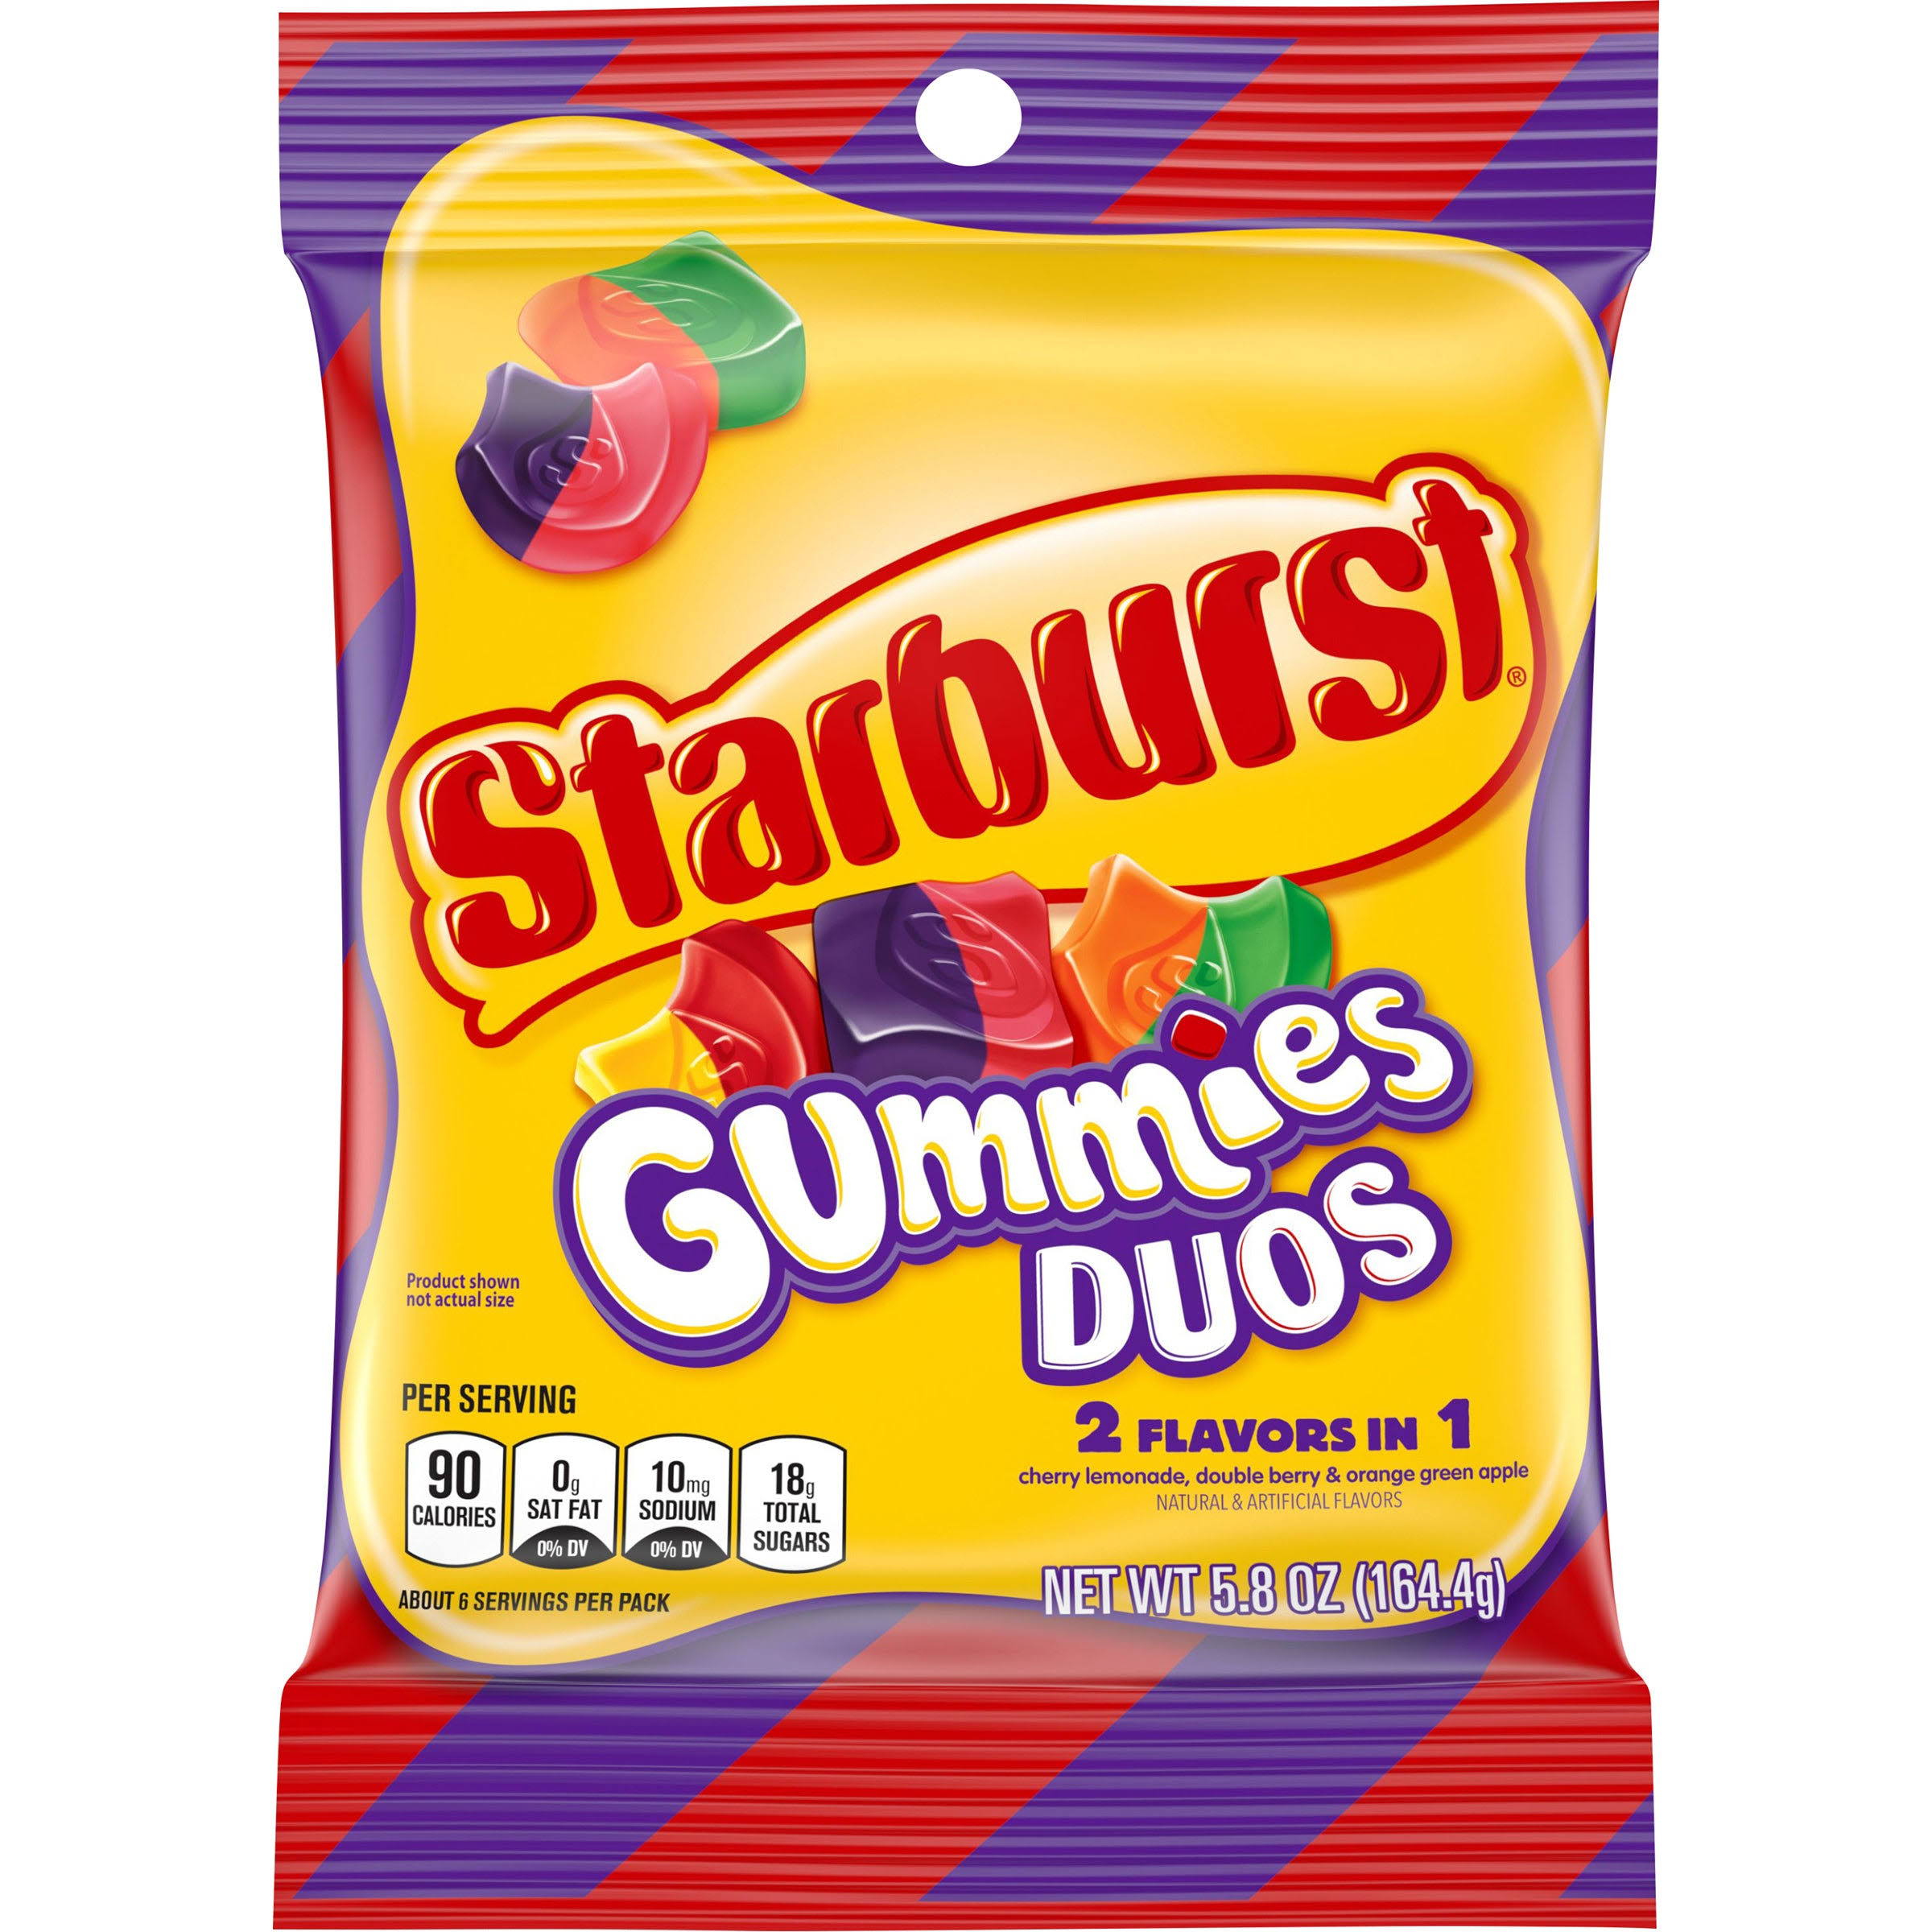 Starburst Gummies Duos Candy (164g)